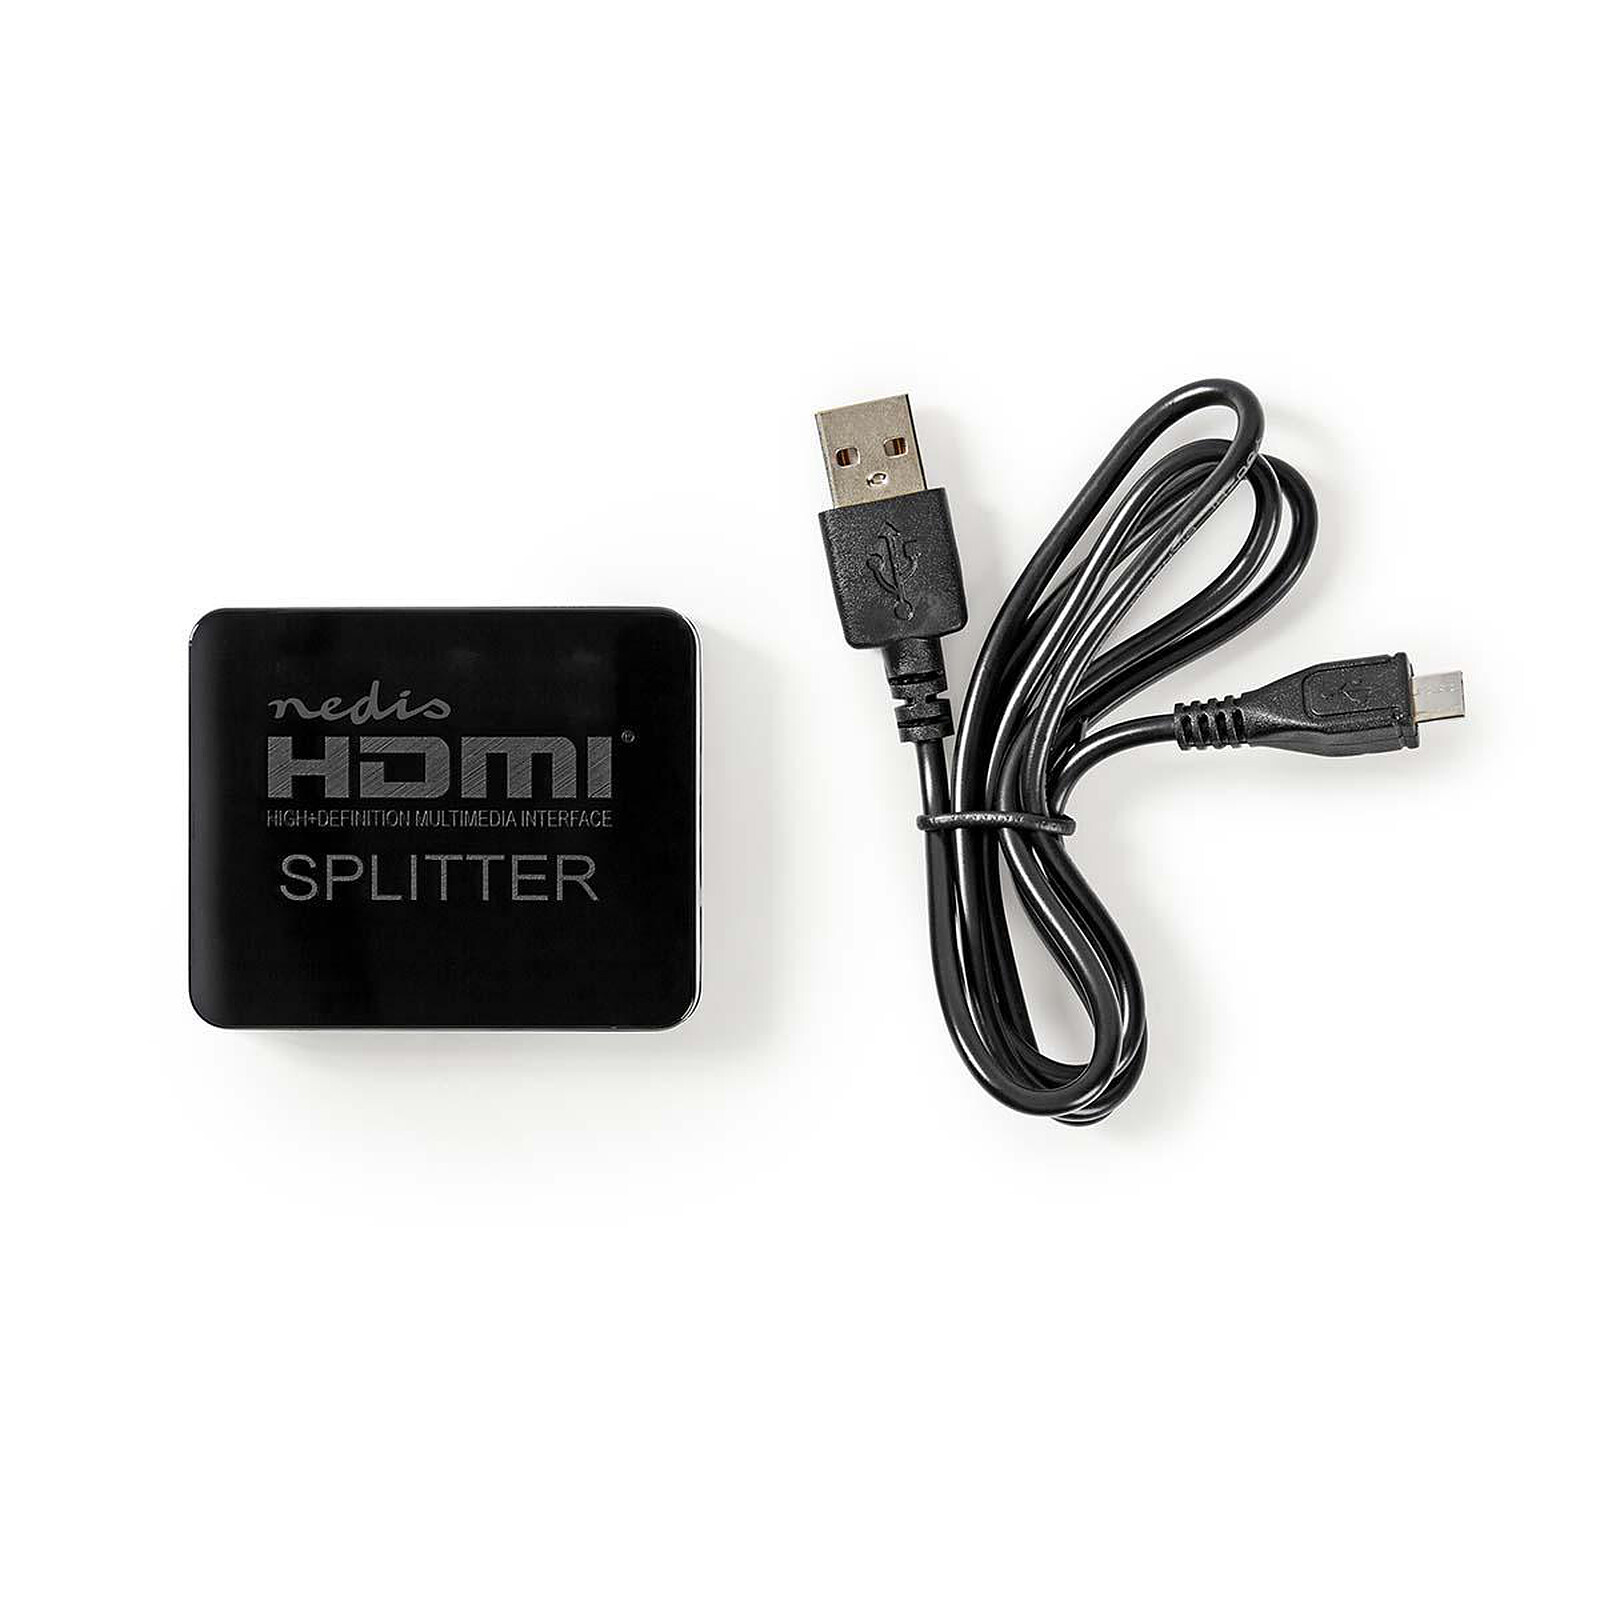 Acheter un splitter HDMI 4K ?